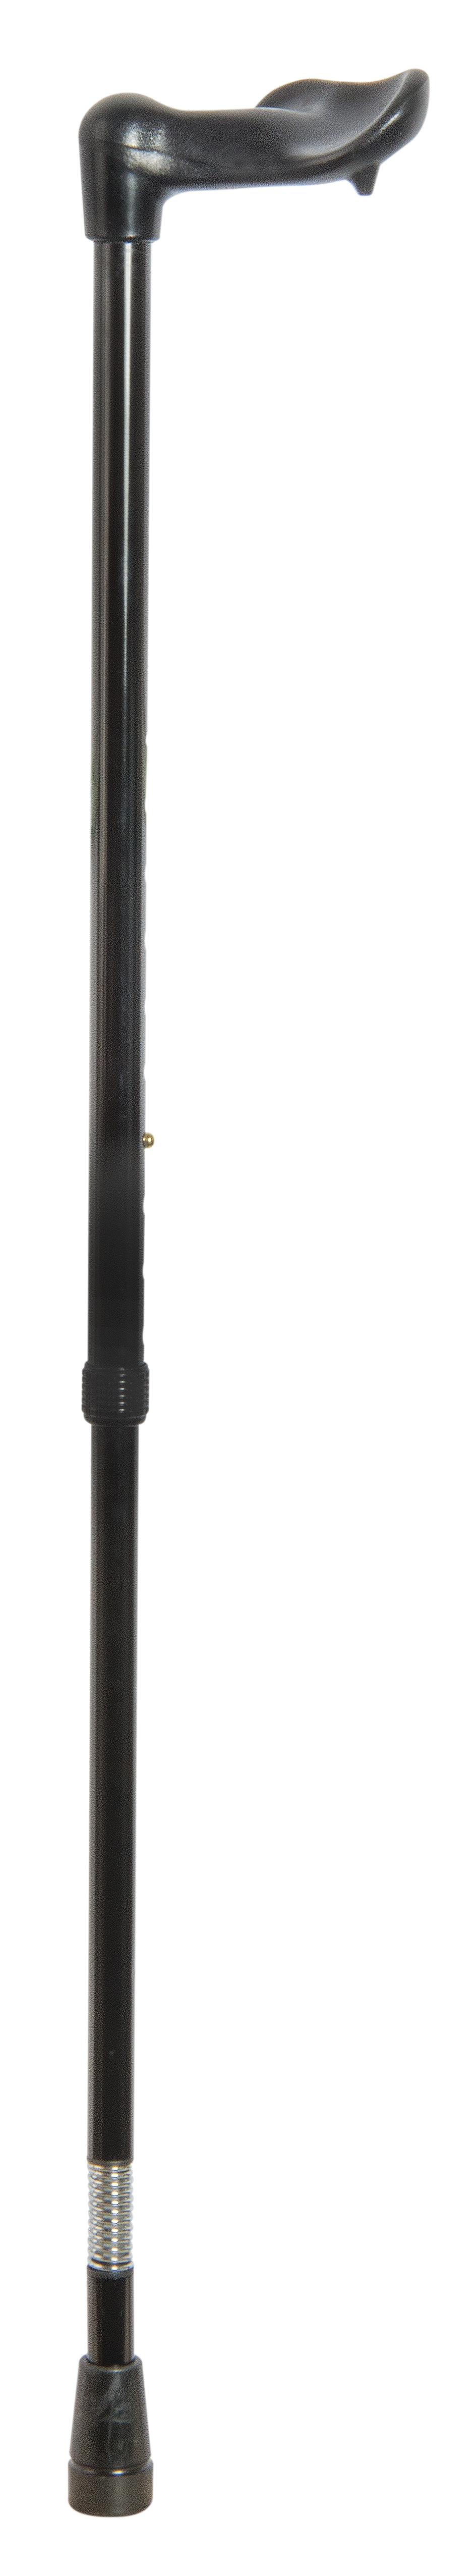 Adjustable Orthopaedic Shock Absorber Walking Stick 4609L/R